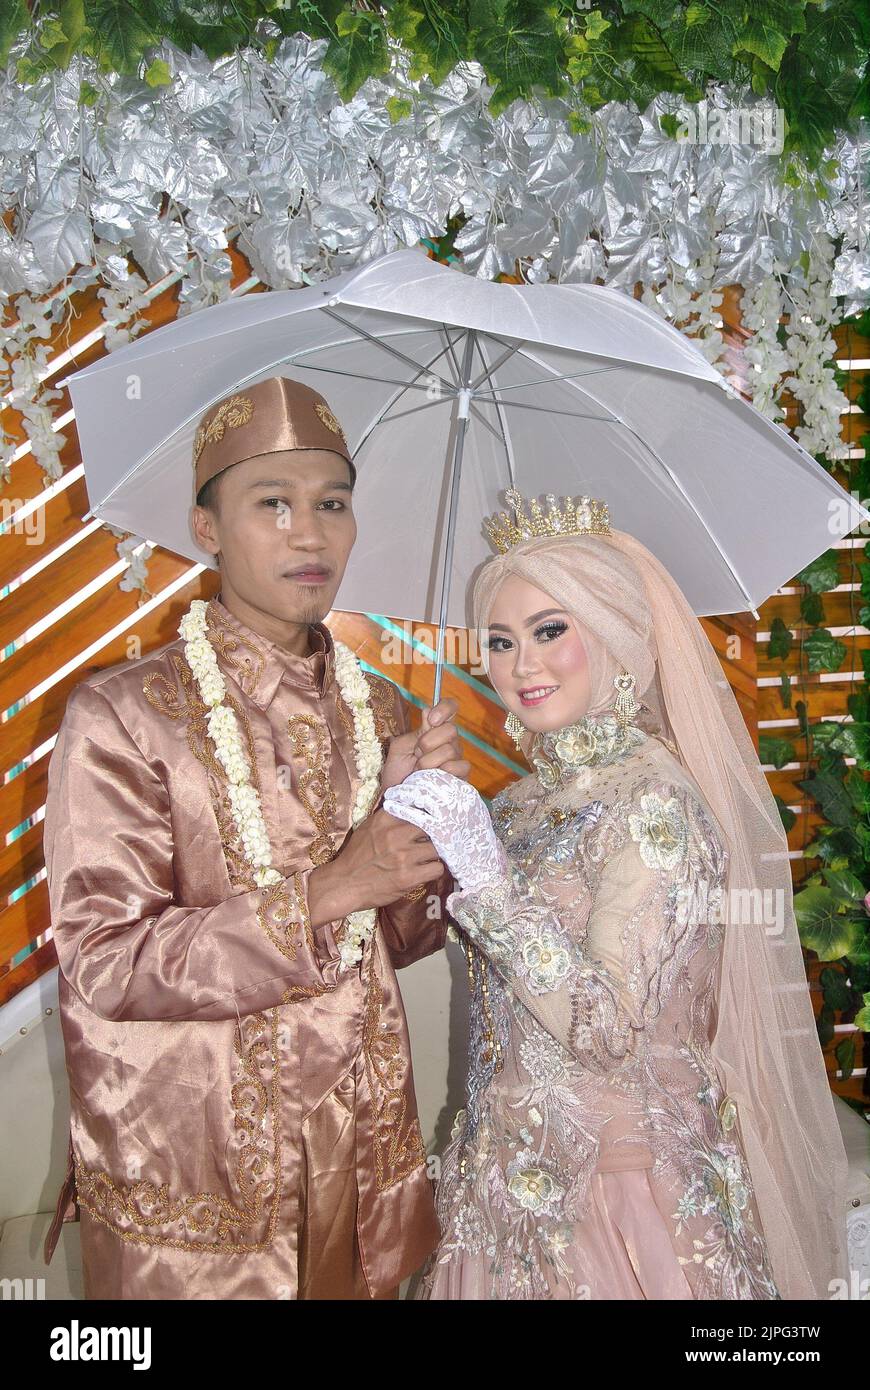 Tegal, INDONÉSIE - 22 décembre 2019 : la mariée et le marié en robes beiges posent à l'aide d'un parapluie. Banque D'Images